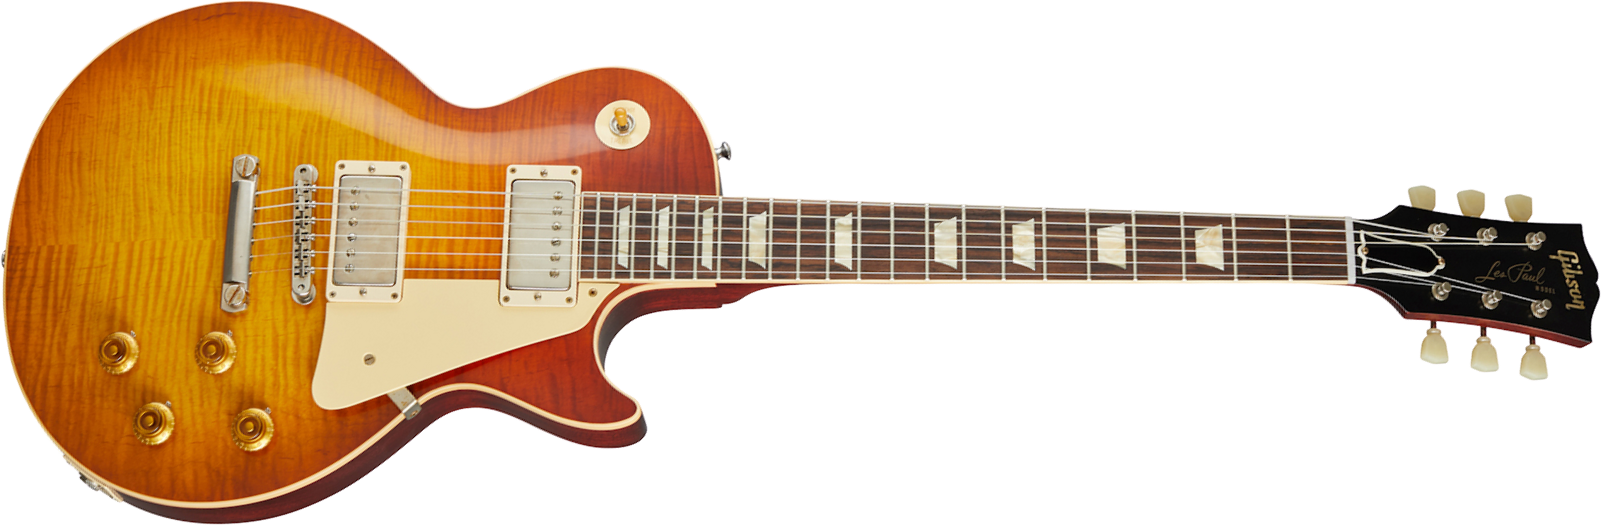 Gibson Custom Shop Les Paul Standard 1960 V1 60th Anniversary 2h Ht Rw - Vos Antiquity Burst - Guitare Électrique Single Cut - Main picture